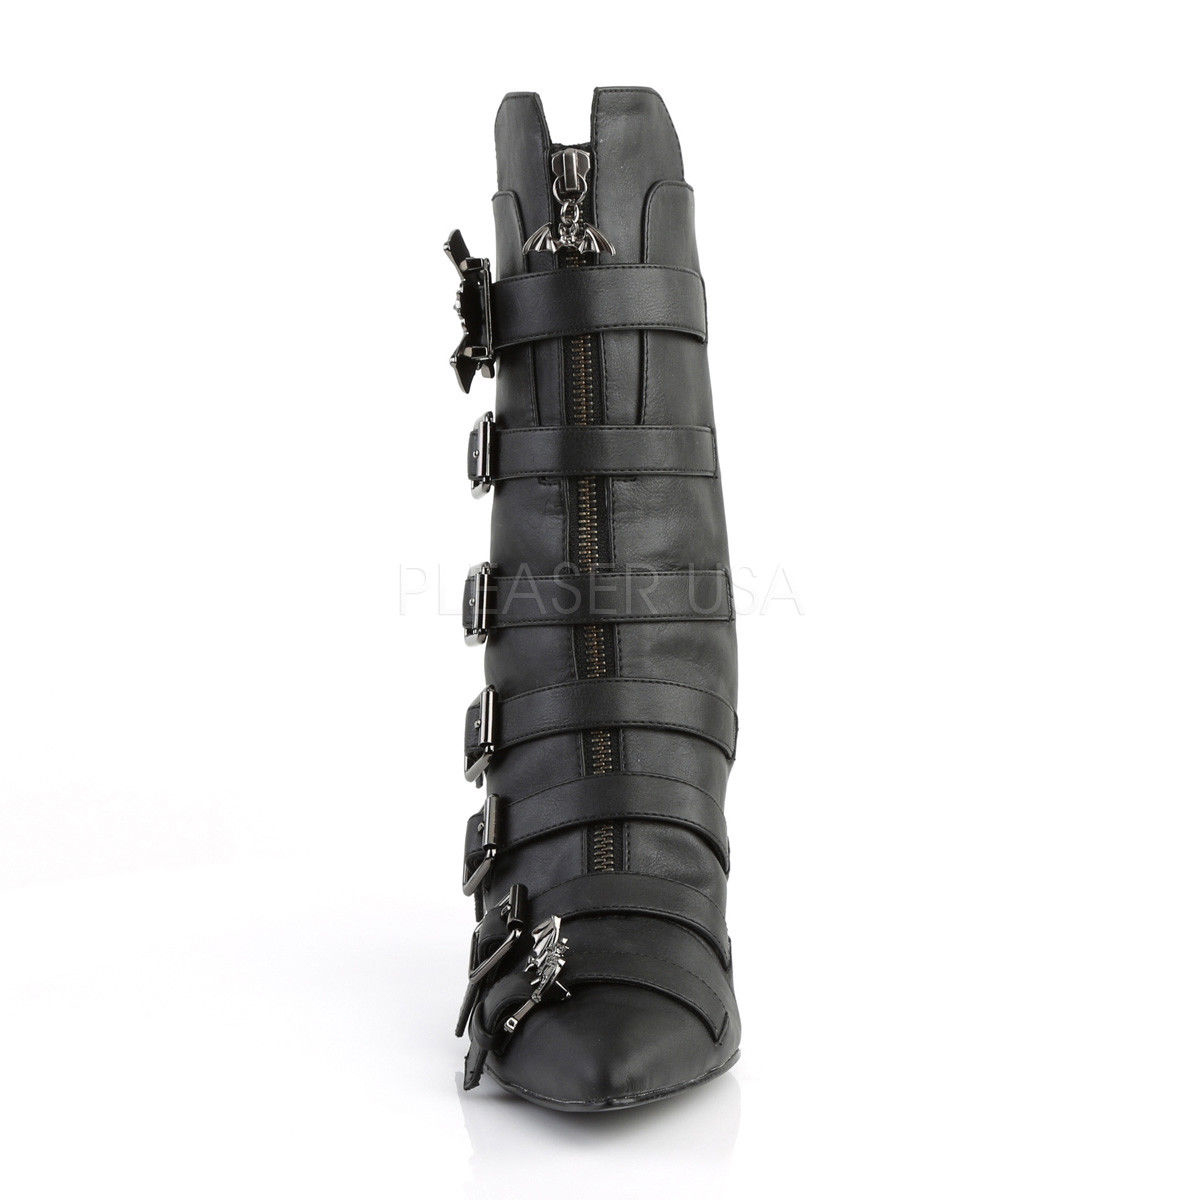 Fury 110 Winklepicker Bat Buckle Boot by Demonia Footwear - in Black - SALE